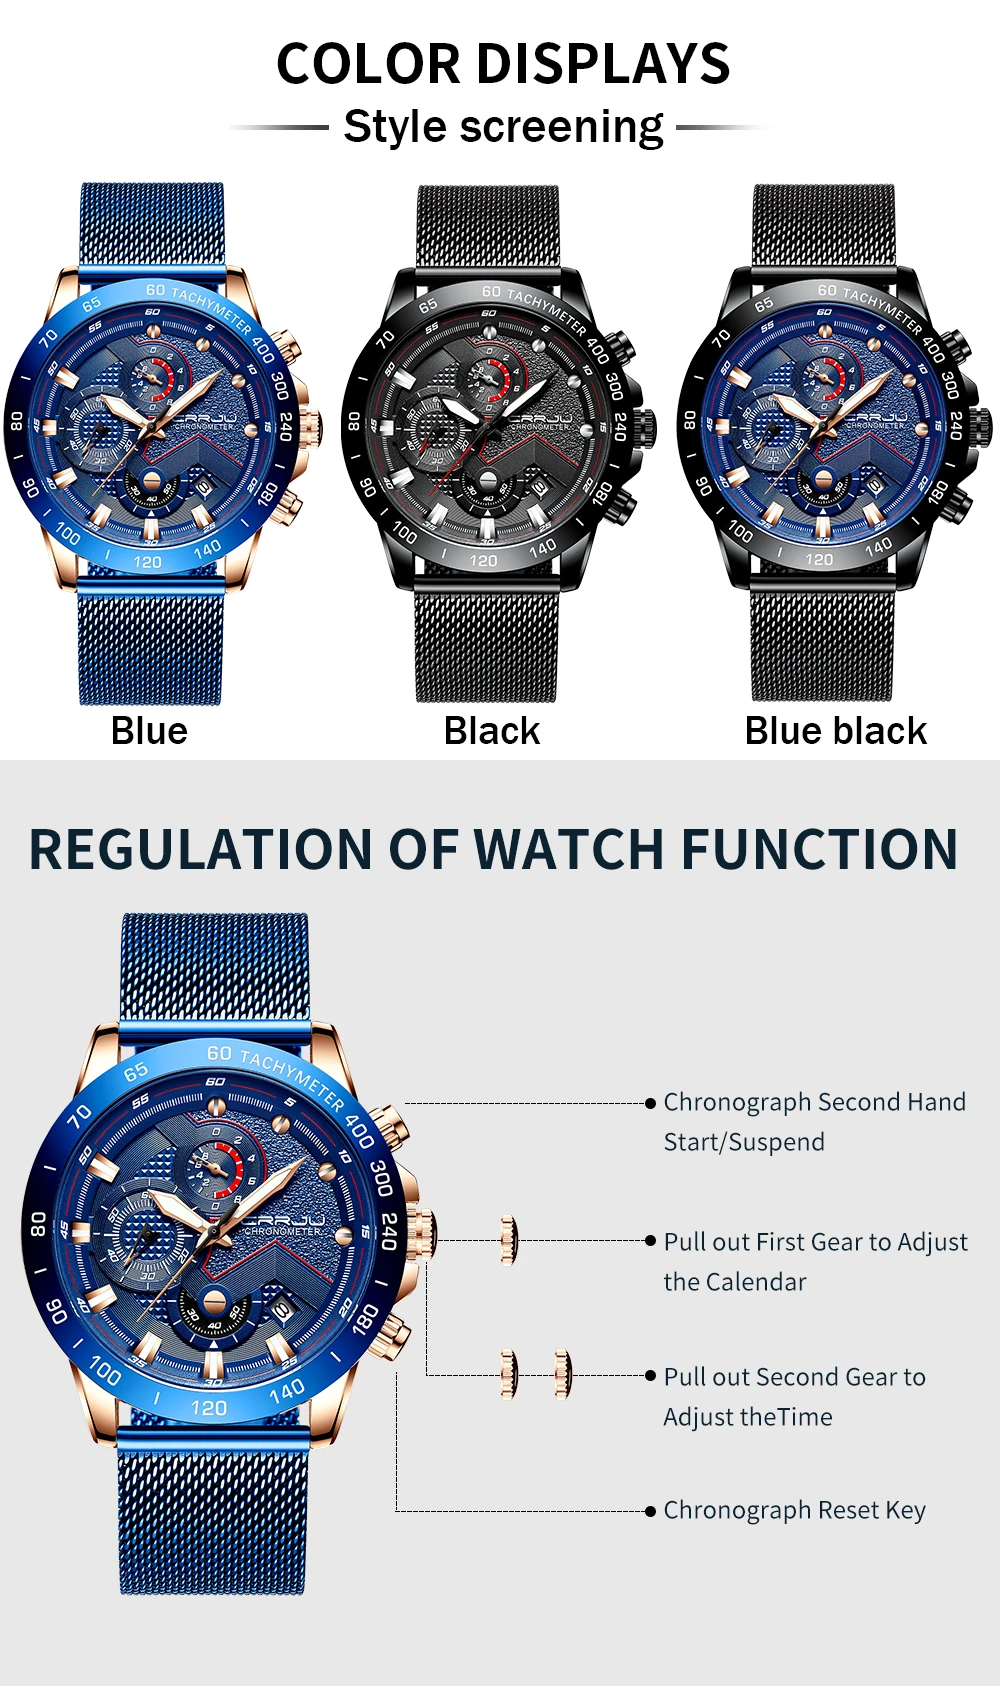 CRRJU Роскошные наручные часы кварцевые мужские водонепроницаемые часы спортивные часы с хронографом синие часы мужские модные часы Relogio Masculino